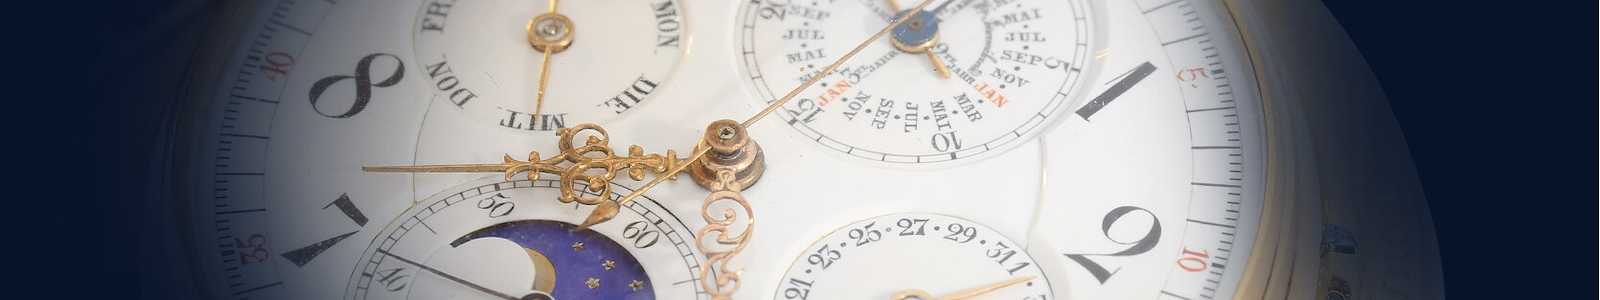 Высококачественные cумки и наручные часы, изысканные коллекционные часы